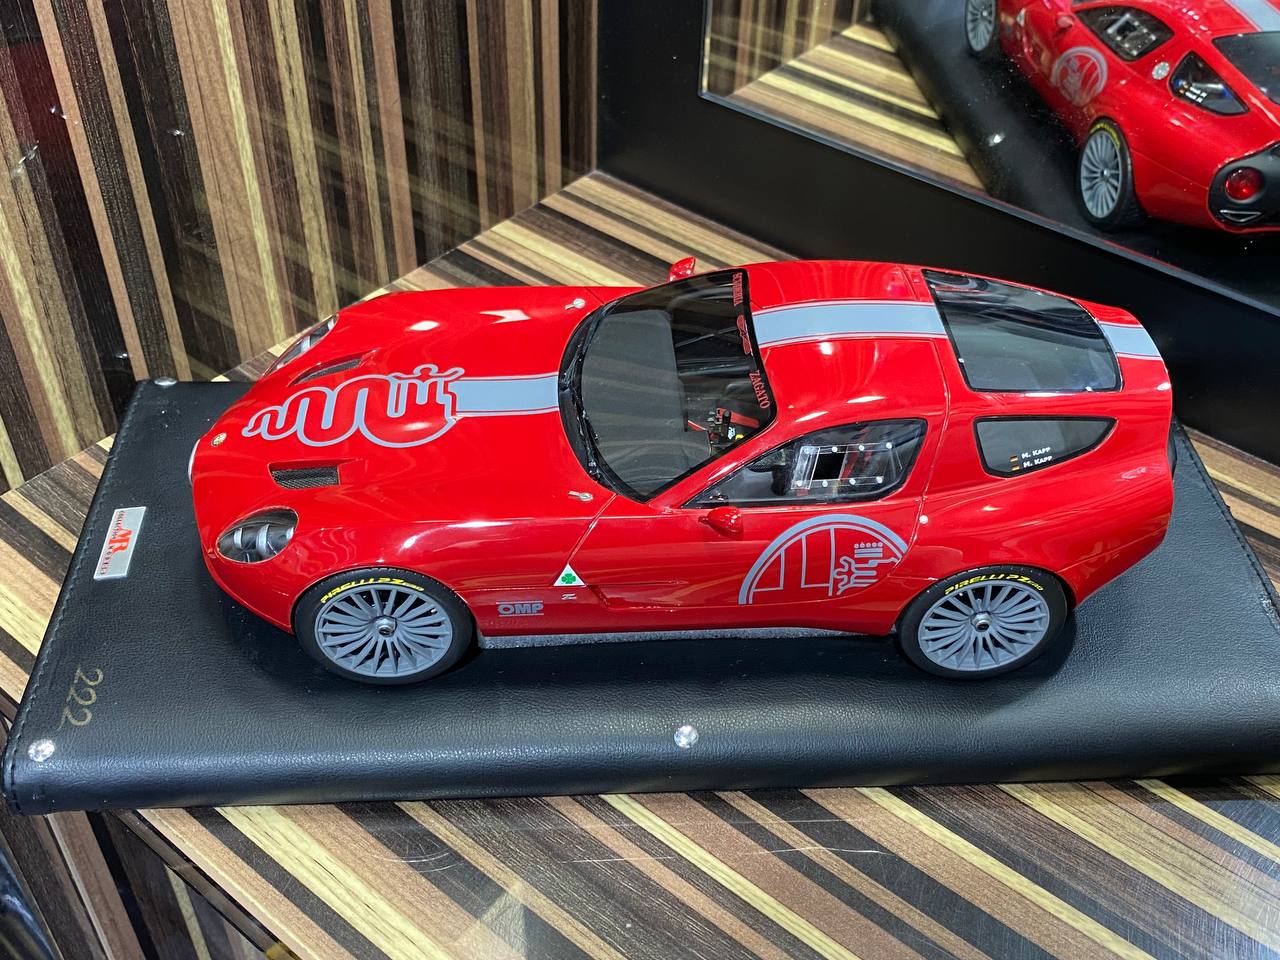 MR Collection Model Alfa Romeo TZ3 Corsa Zagato - 1/18 Resin, Limited Edition,Red|Sold in Dturman.com Dubai UAE.